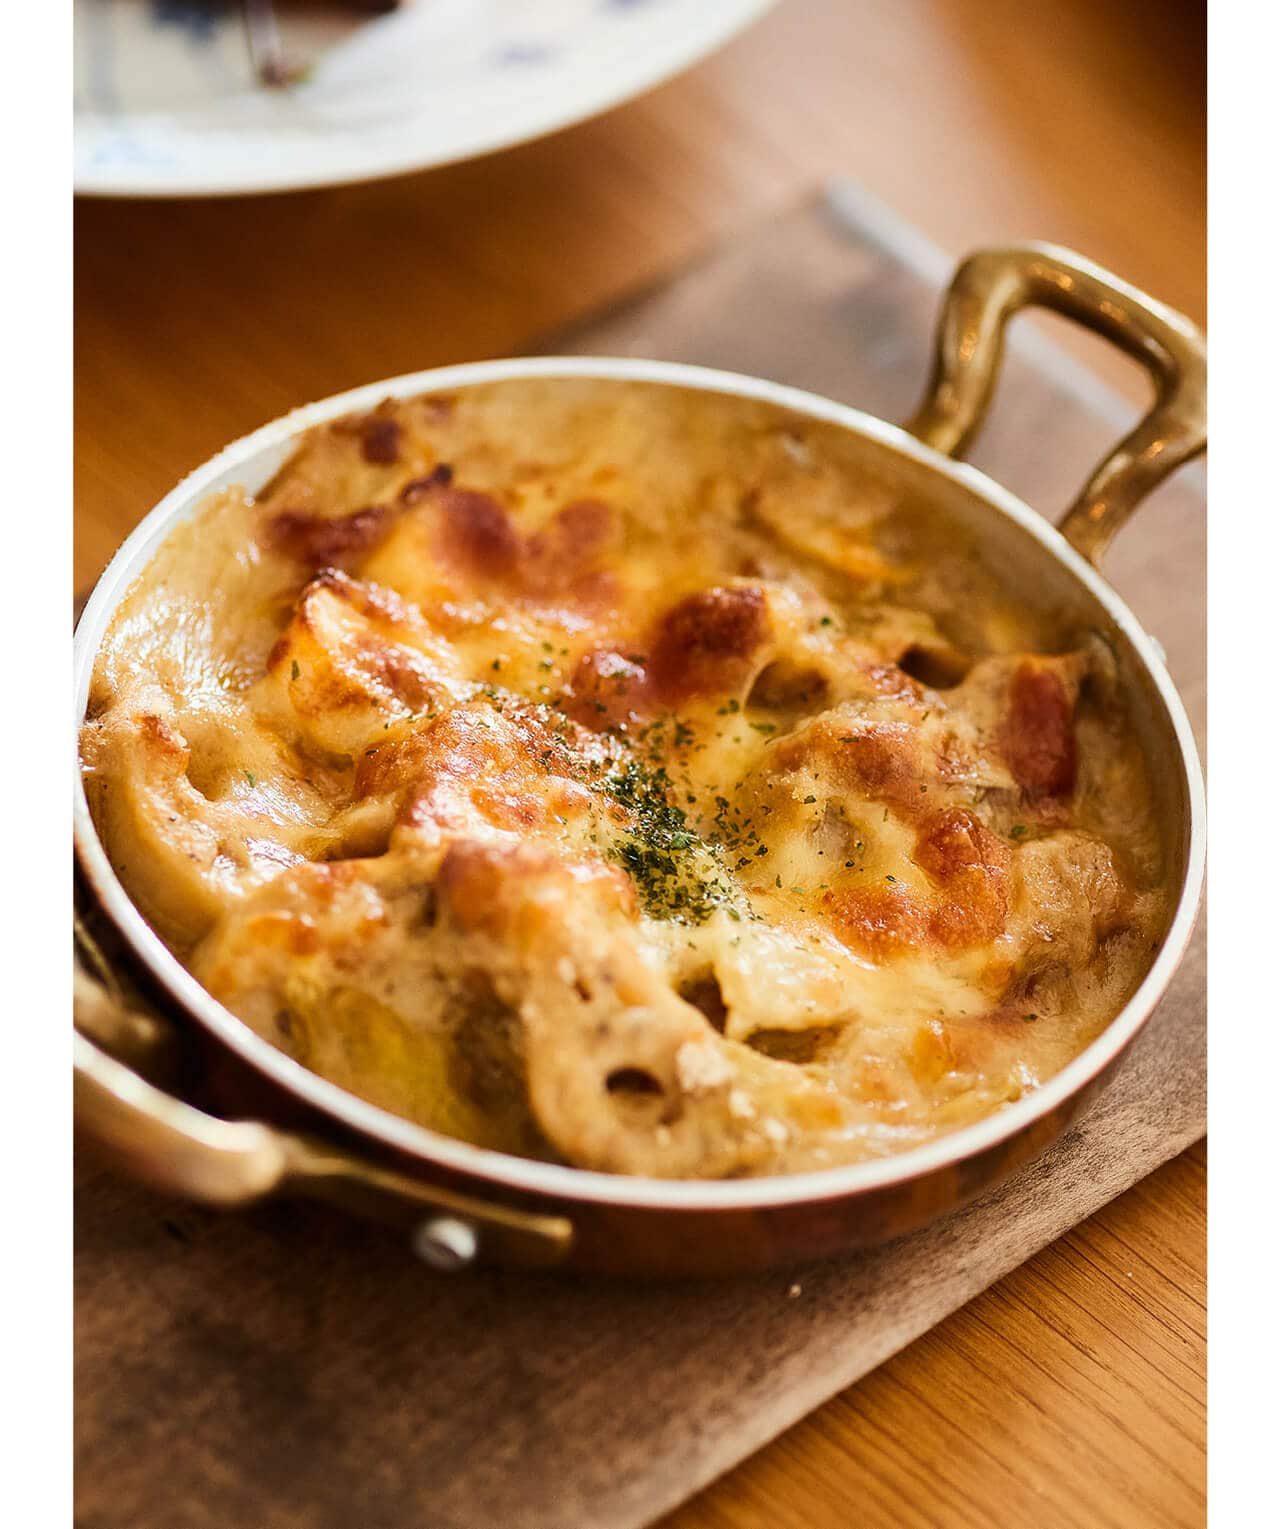 「バッラリーニ」のサービングパンには根菜と鶏肉、白菜のグラタンを。ホワイトソースは小麦粉ではなく米粉で作るのがコツ。